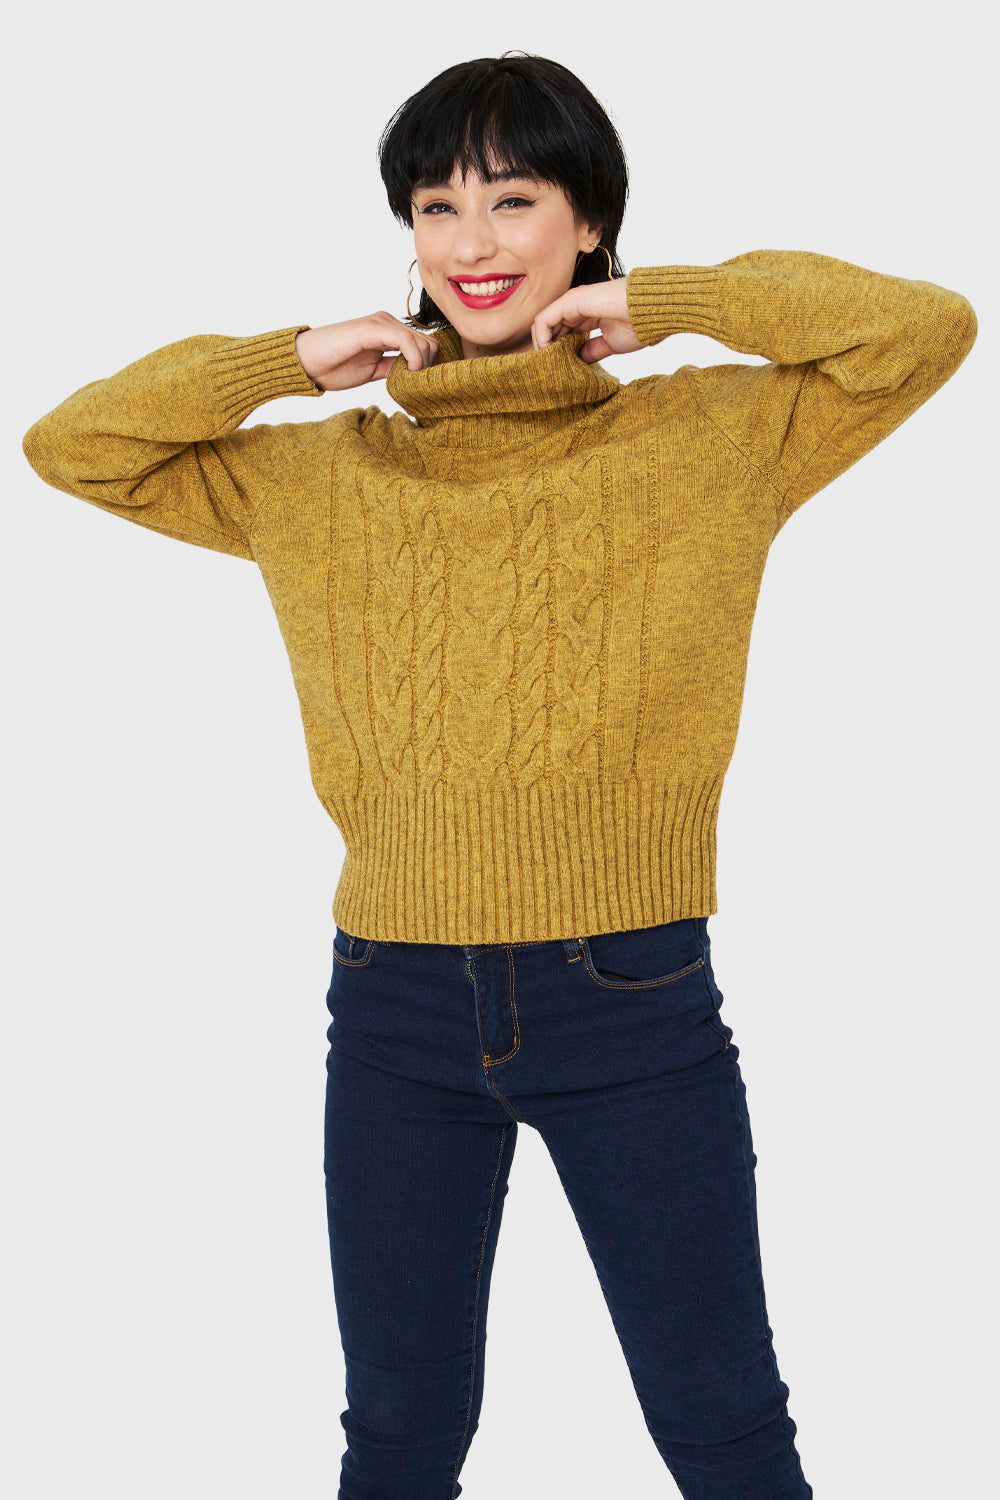 Sweater Cuello Alto Trenzas Mostaza